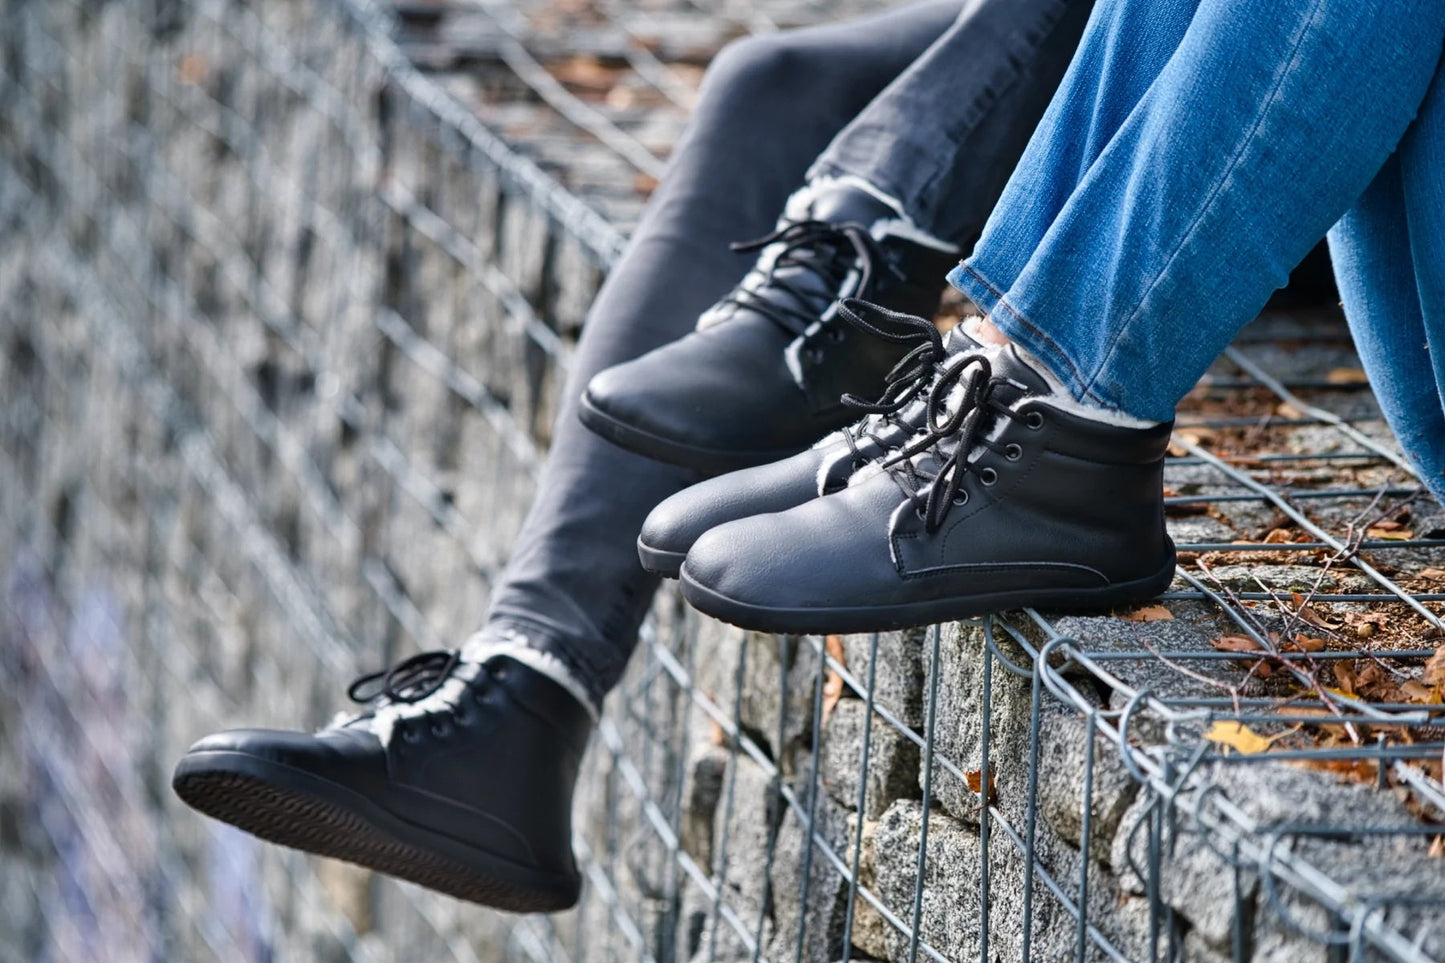 Ahinsa Winter Barefoot barfods vinterstøvler til mænd i farven black, lifestyle